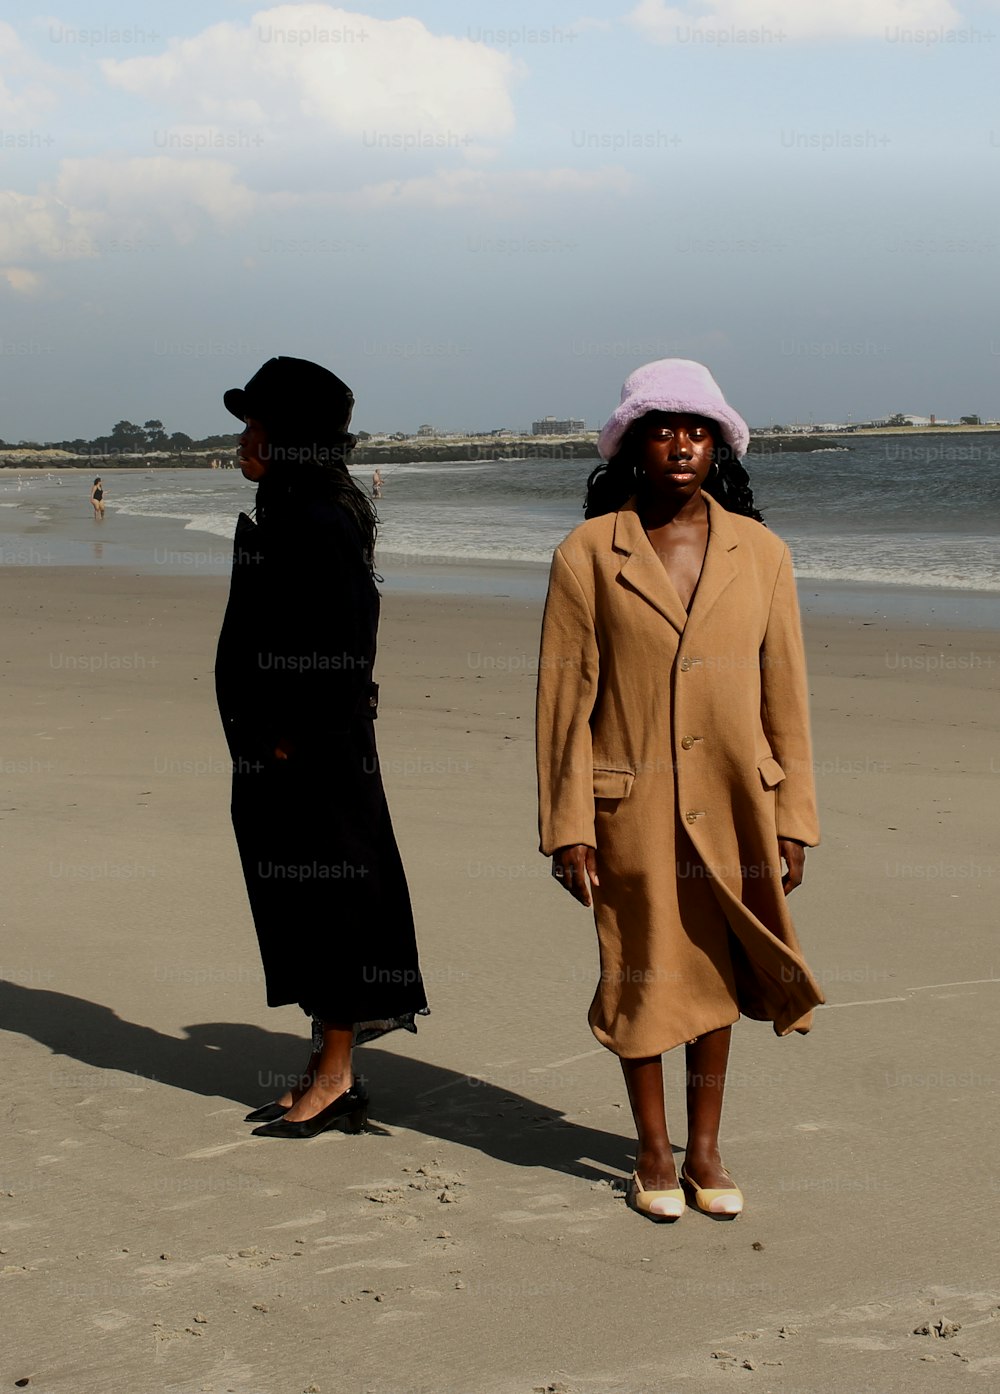 모래사장 위에 서 있는 두 여자